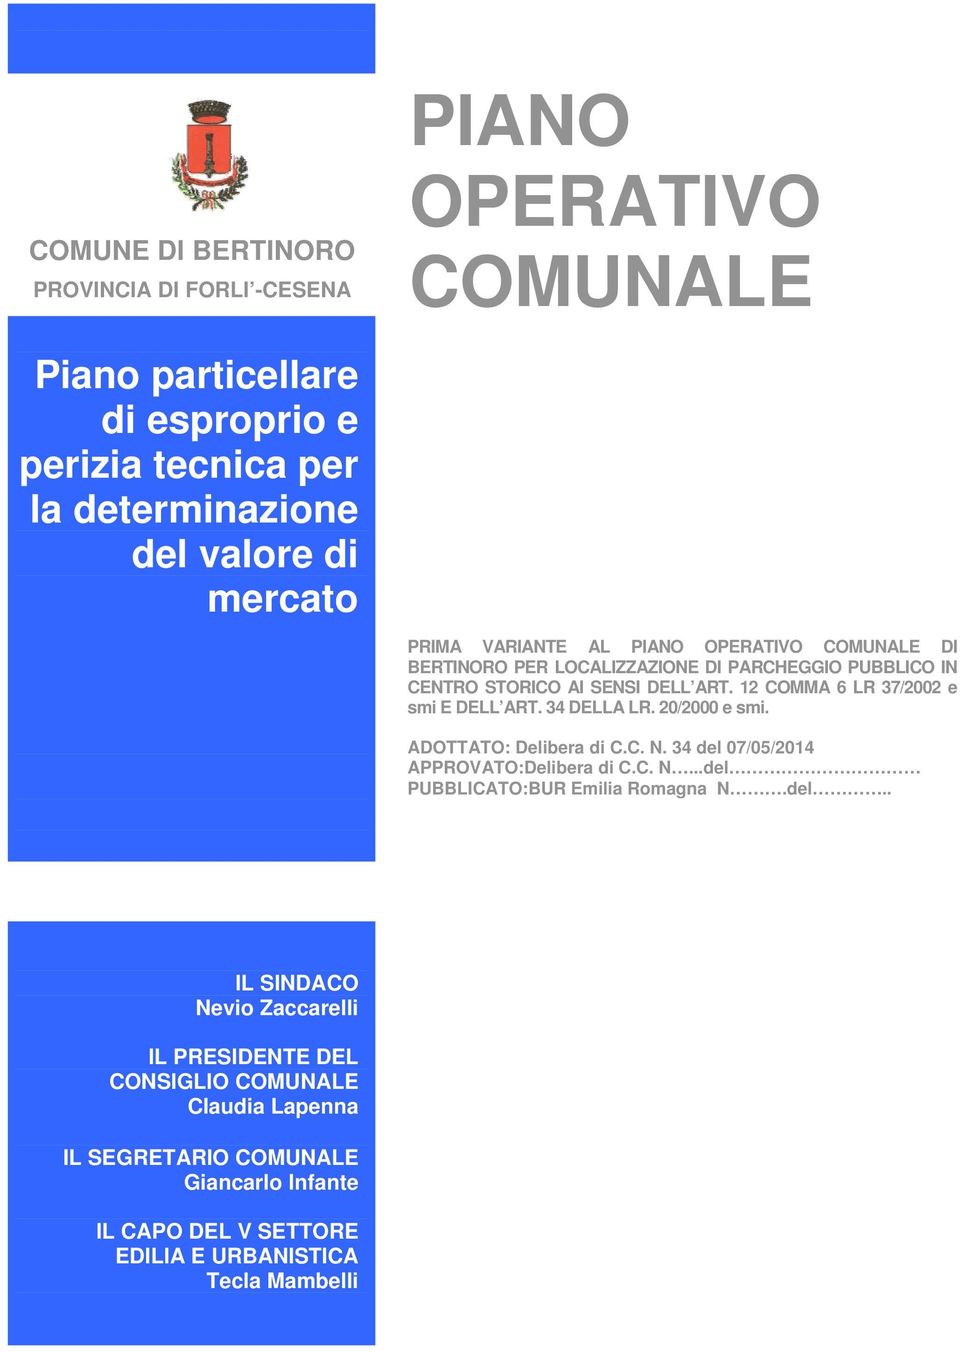 12 COMMA 6 LR 37/2002 e smi E DELL ART. 34 DELLA LR. 20/2000 e smi. ADOTTATO: Delibera di C.C. N. 34 del 07/05/2014 APPROVATO:Delibera di C.C. N...del PUBBLICATO:BUR Emilia Romagna N.